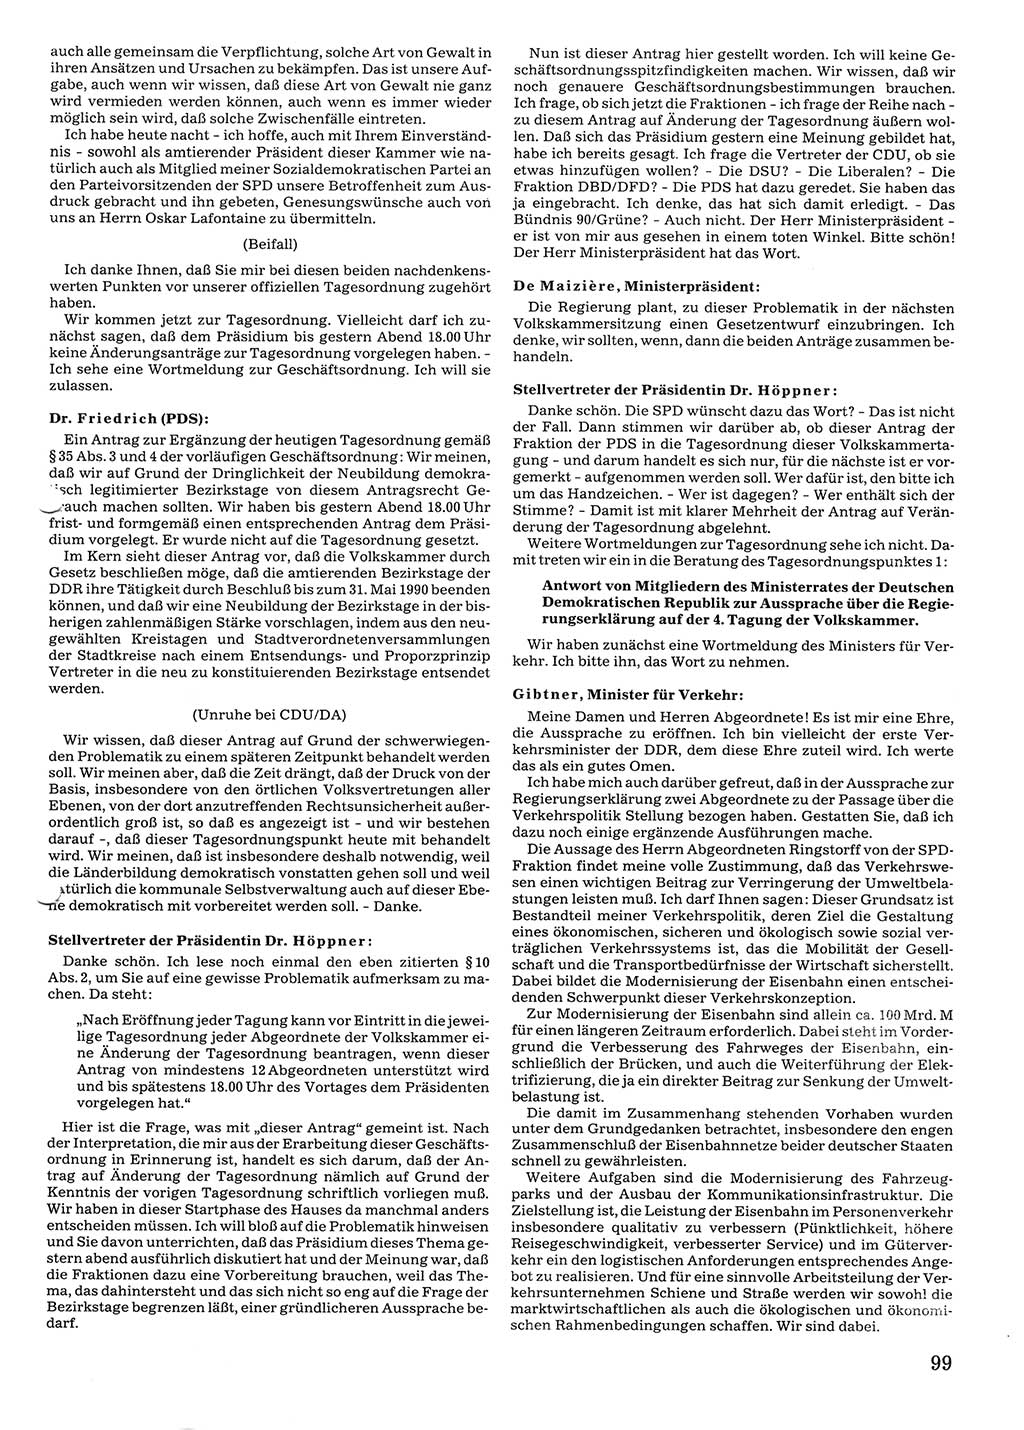 Tagungen der Volkskammer (VK) der Deutschen Demokratischen Republik (DDR), 10. Wahlperiode 1990, Seite 99 (VK. DDR 10. WP. 1990, Prot. Tg. 1-38, 5.4.-2.10.1990, S. 99)